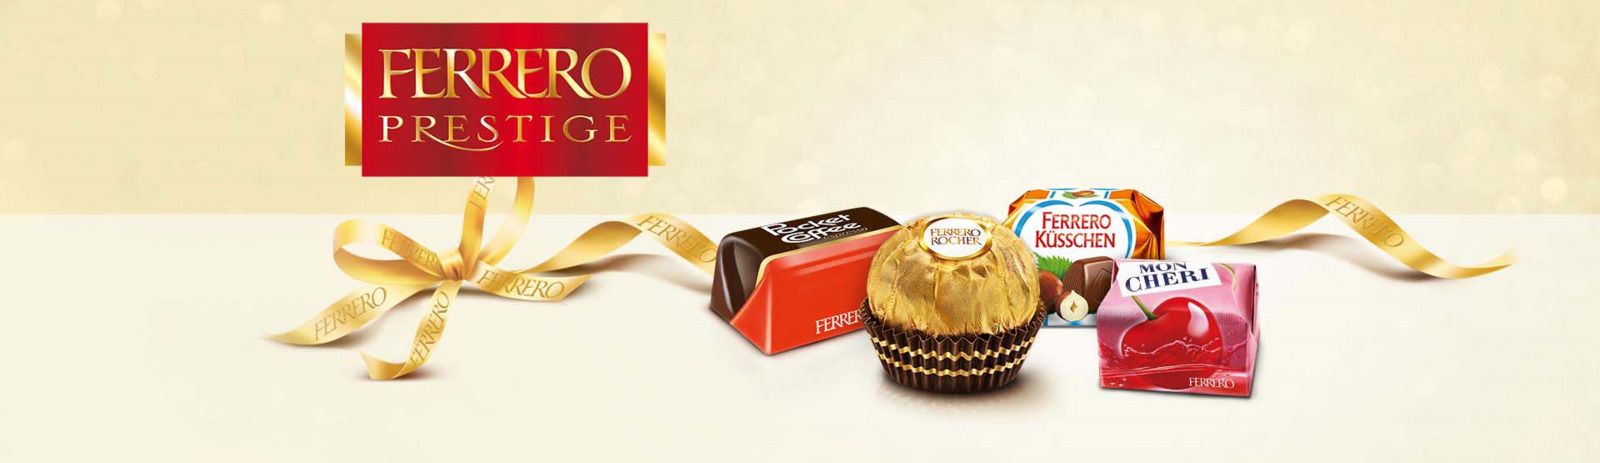  Ferrero 0500_03600